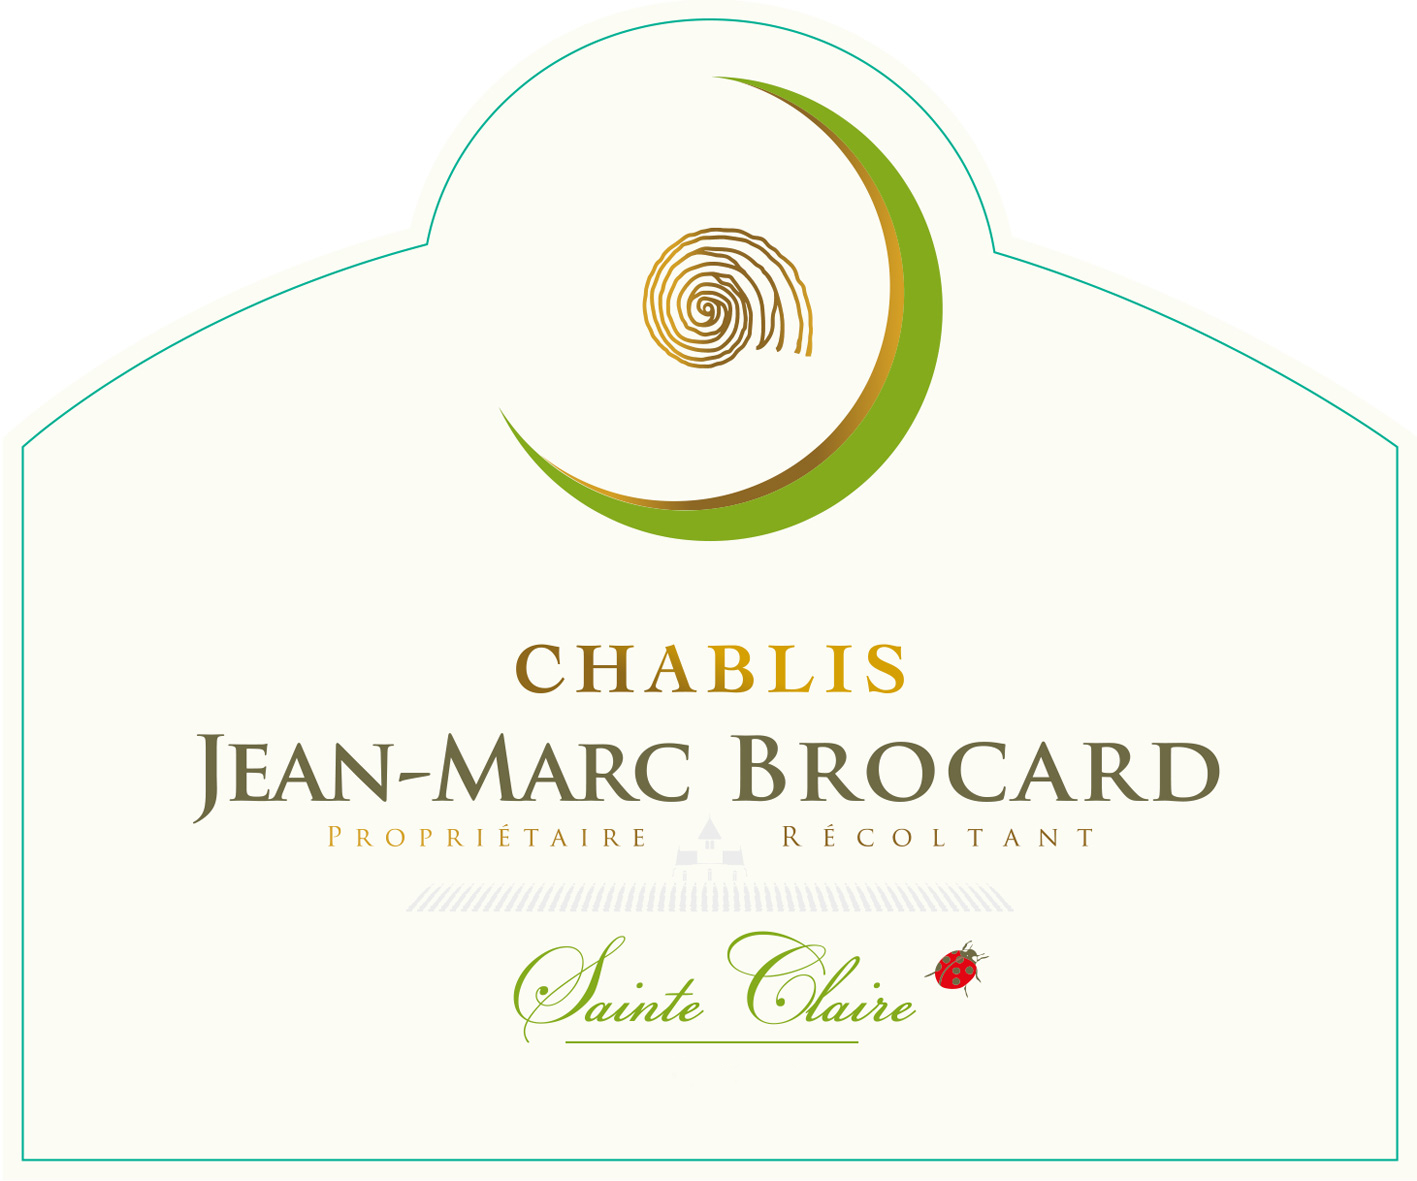 Jean-Marc Brocard Chablis Sainte Claire-image